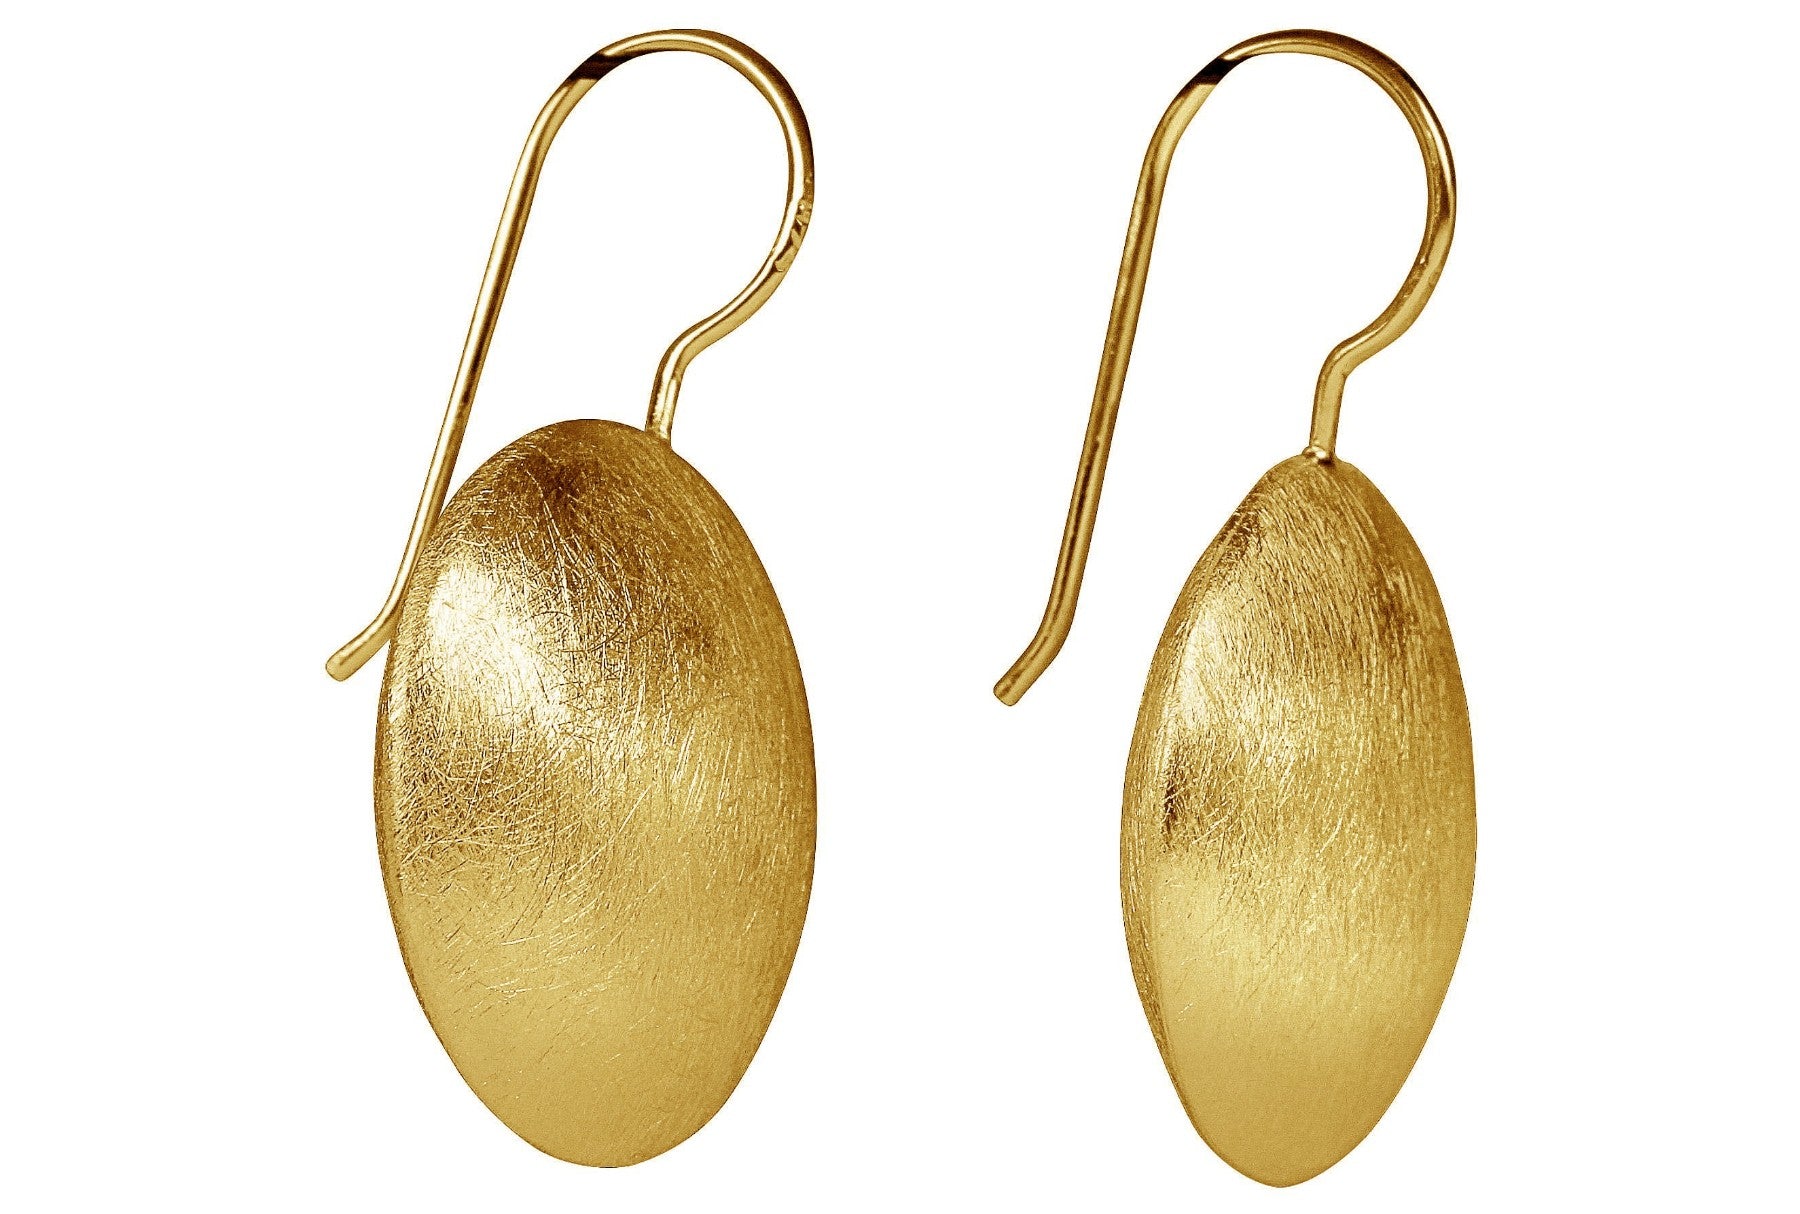 Große runde Ohrhänger aus vergoldetem Silber für Damen in Form eines Knopfs, die eine mattierte Oberfläche aufweisen.